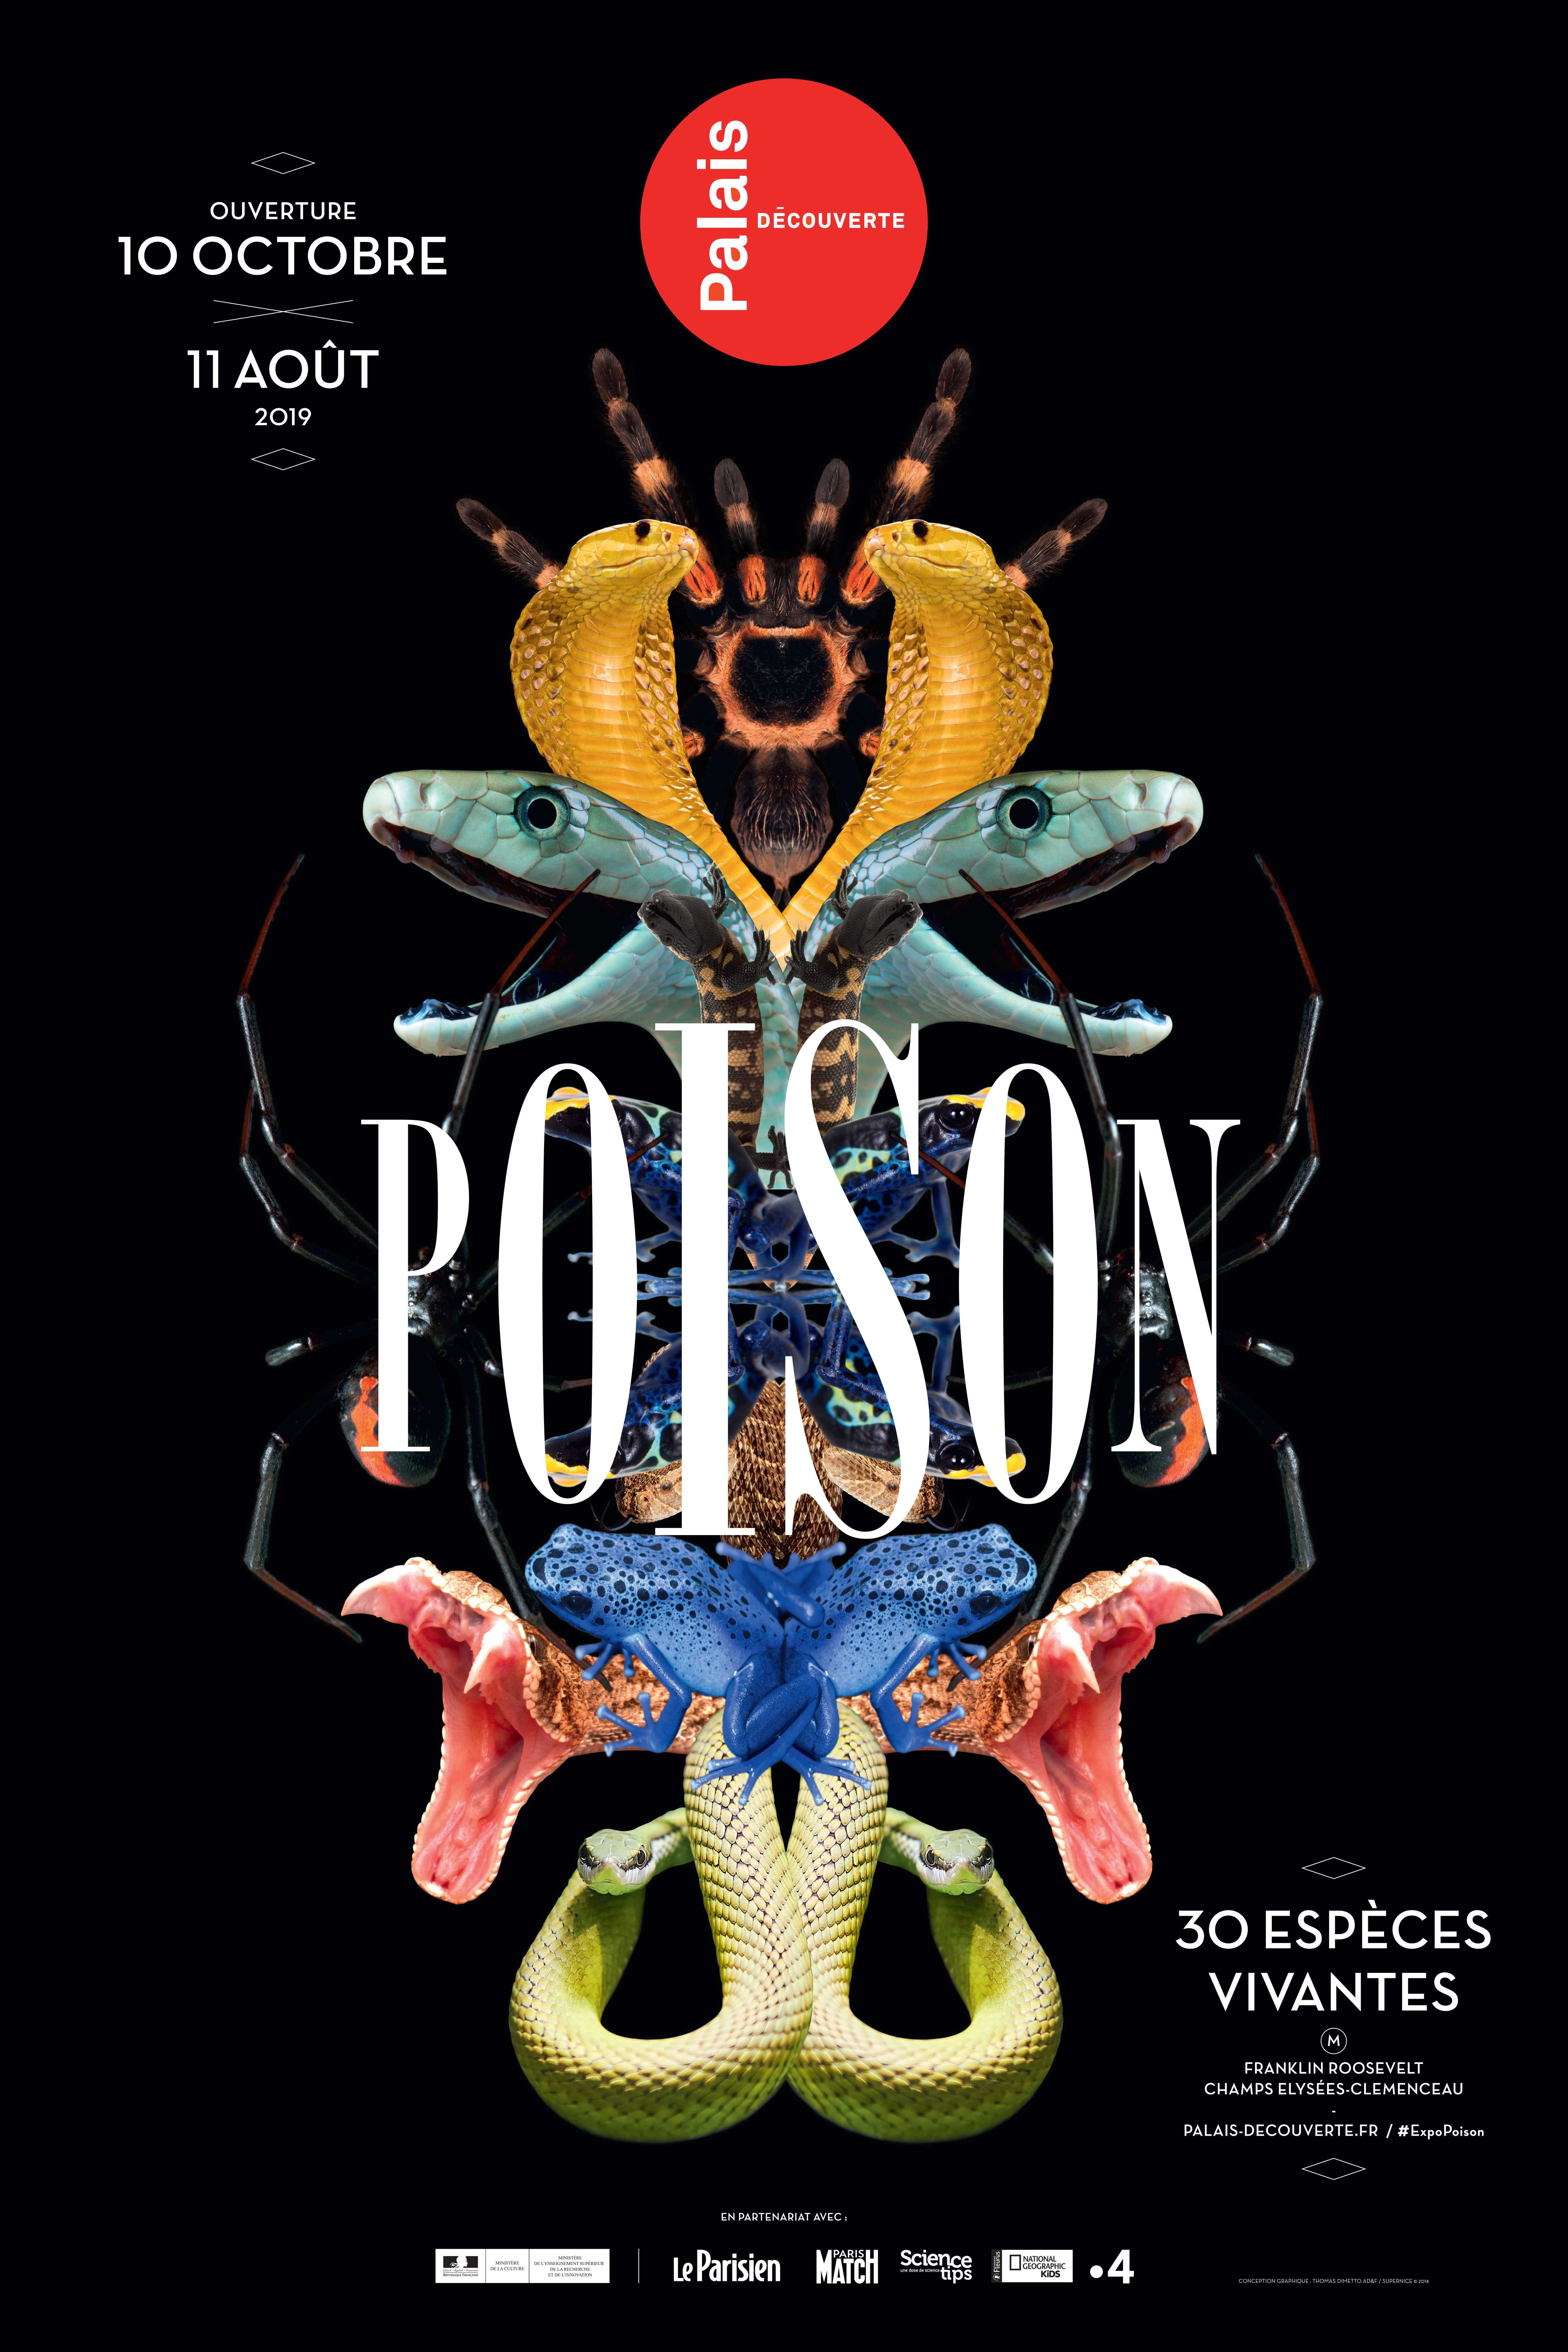 Poison, Exhibition, Palais de la découverte, Paris: 10 October 2018-11 August 2019